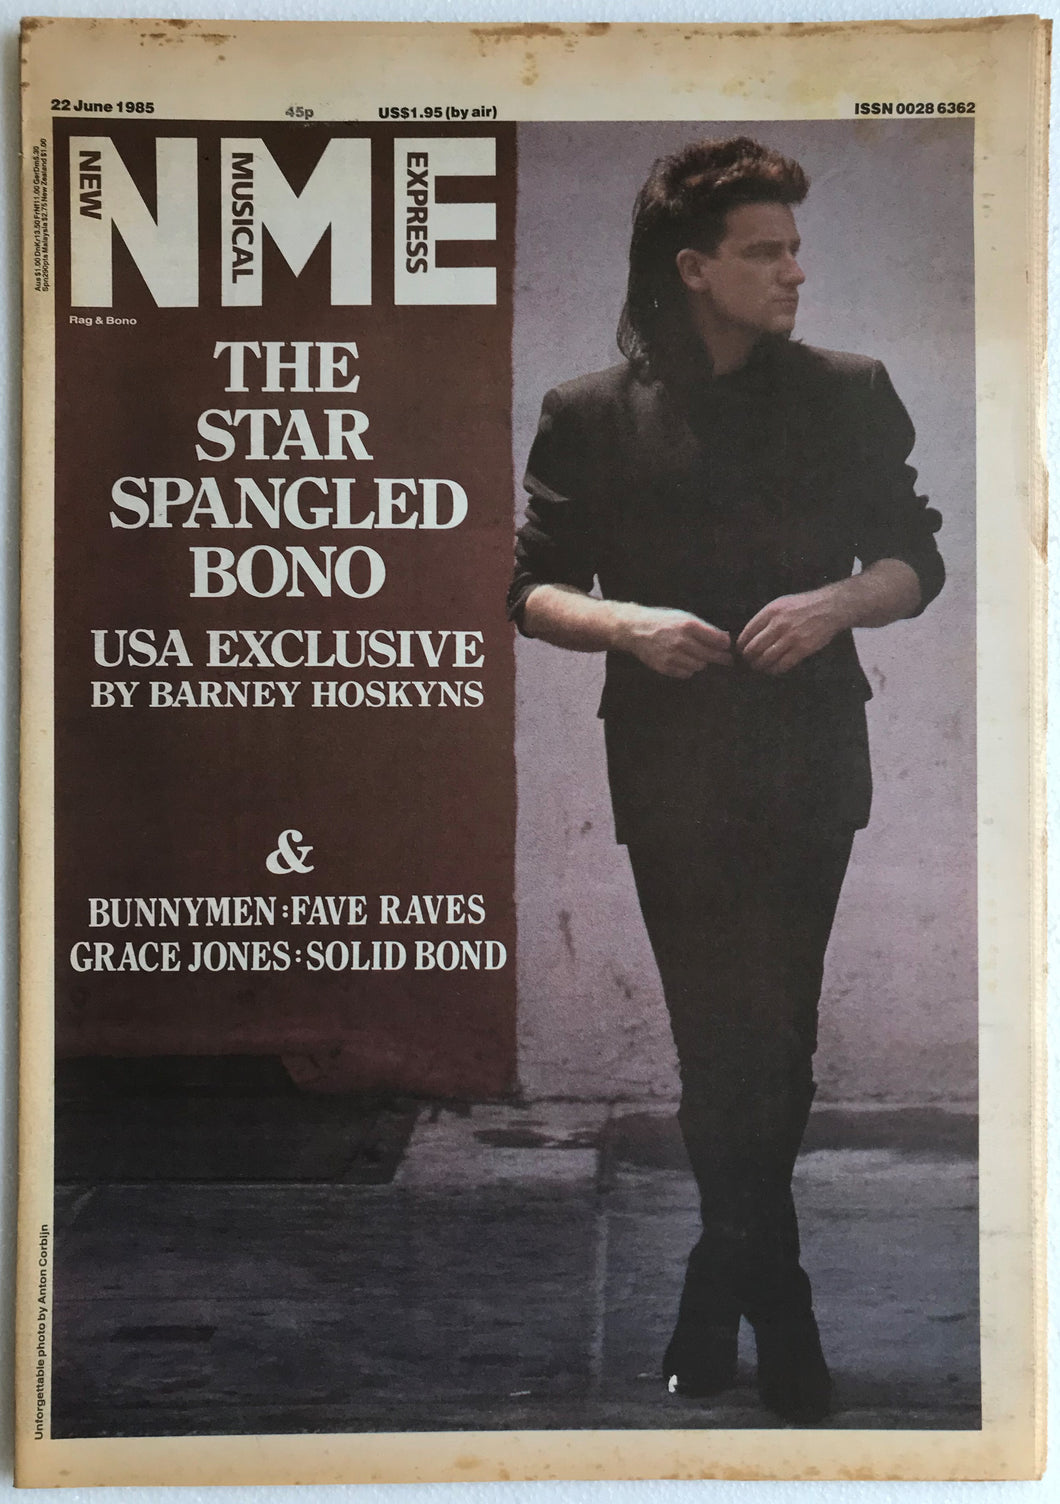 U2 - NME